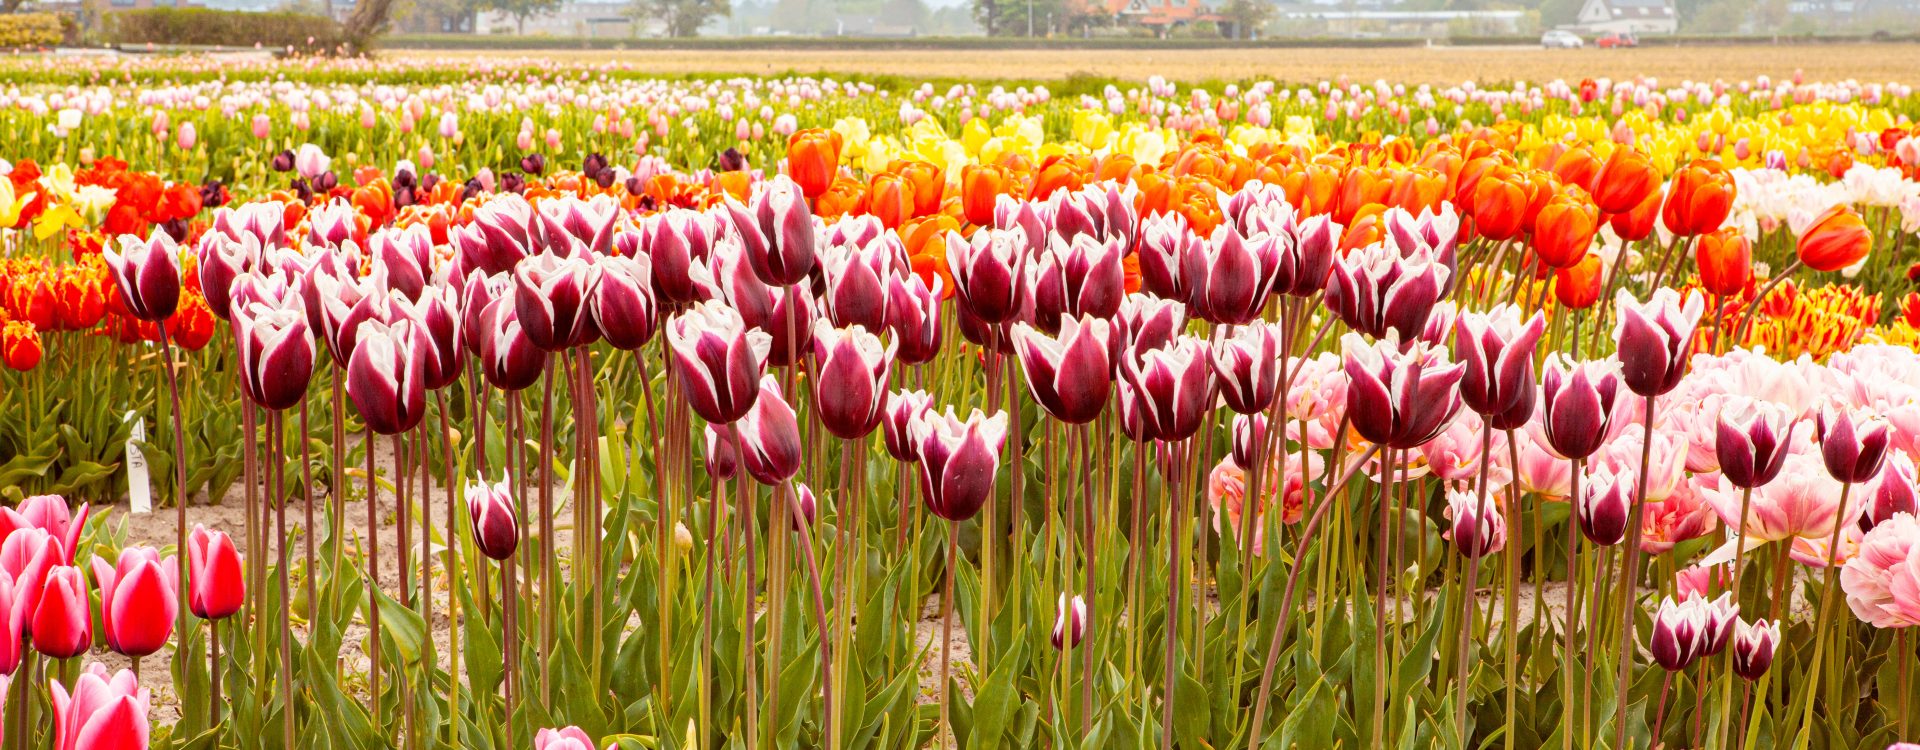 massif de tulipes multicolores - parc de keukenhof